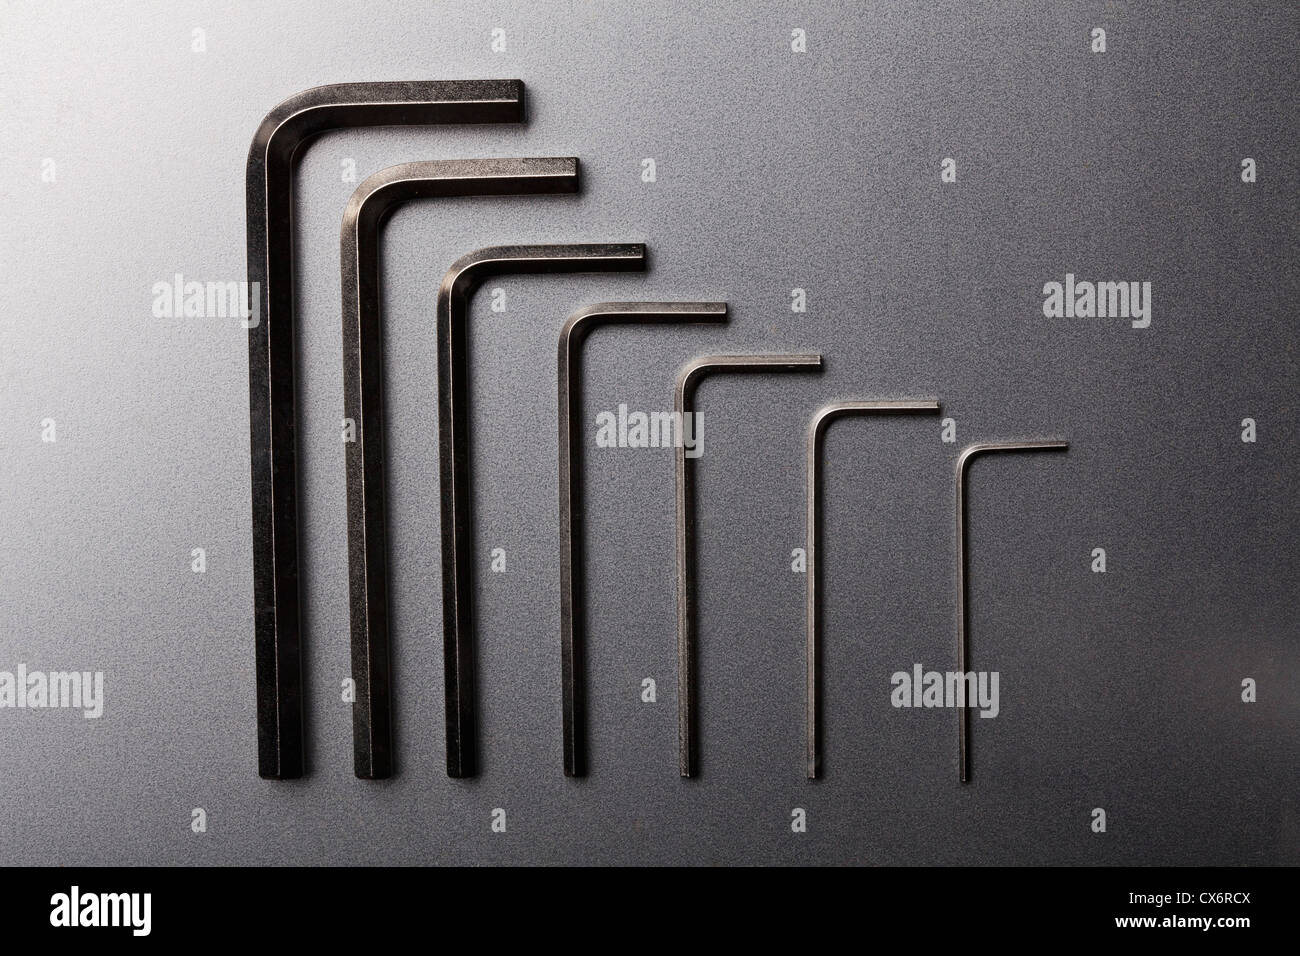 Varie dimensioni di chiavi a brugola in una fila ordinata Foto Stock